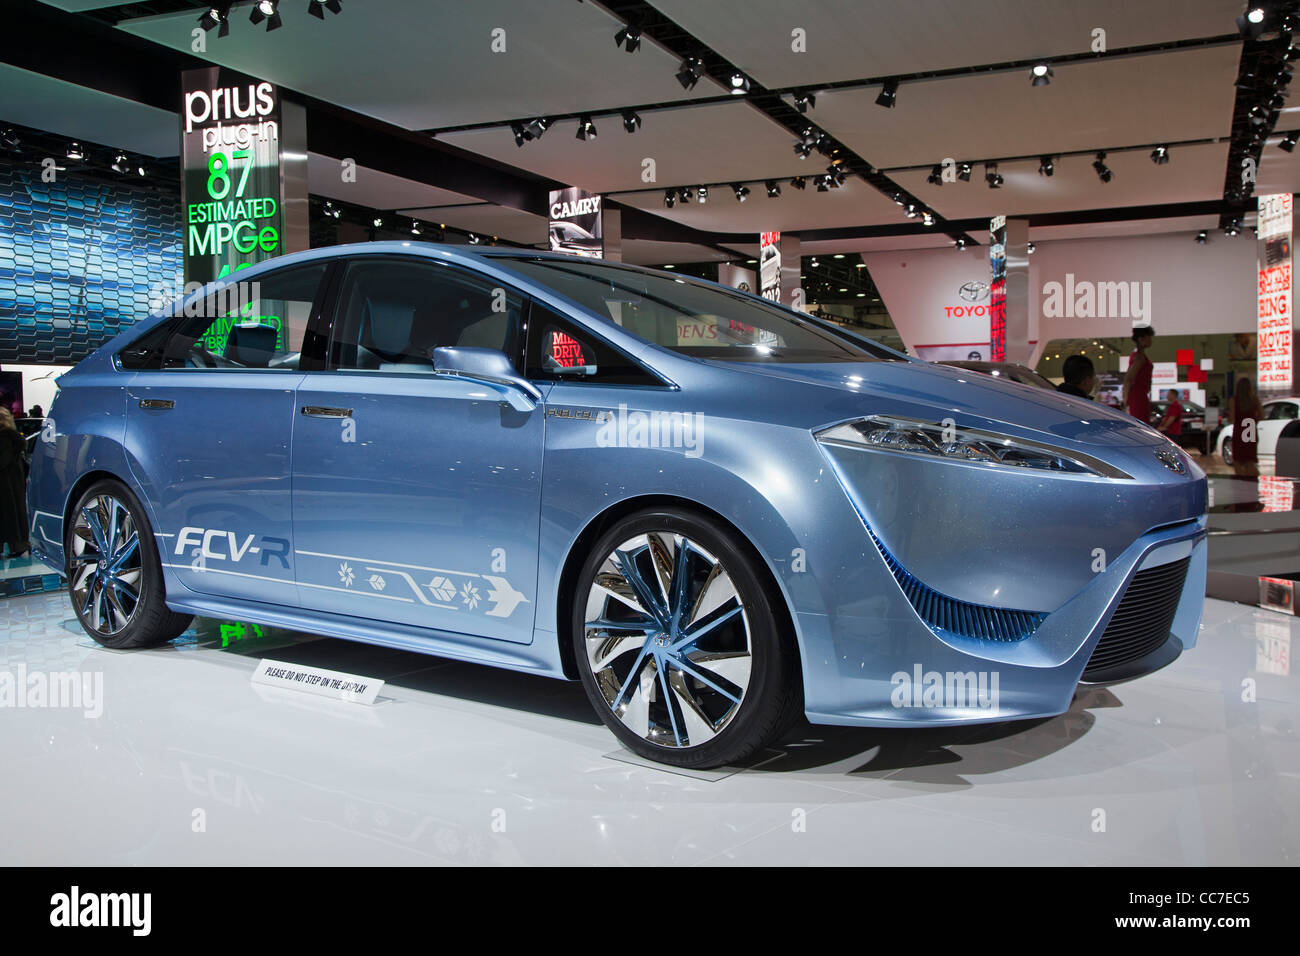 Toyota FCV-R à pile à combustible hydrogène véhicule Banque D'Images